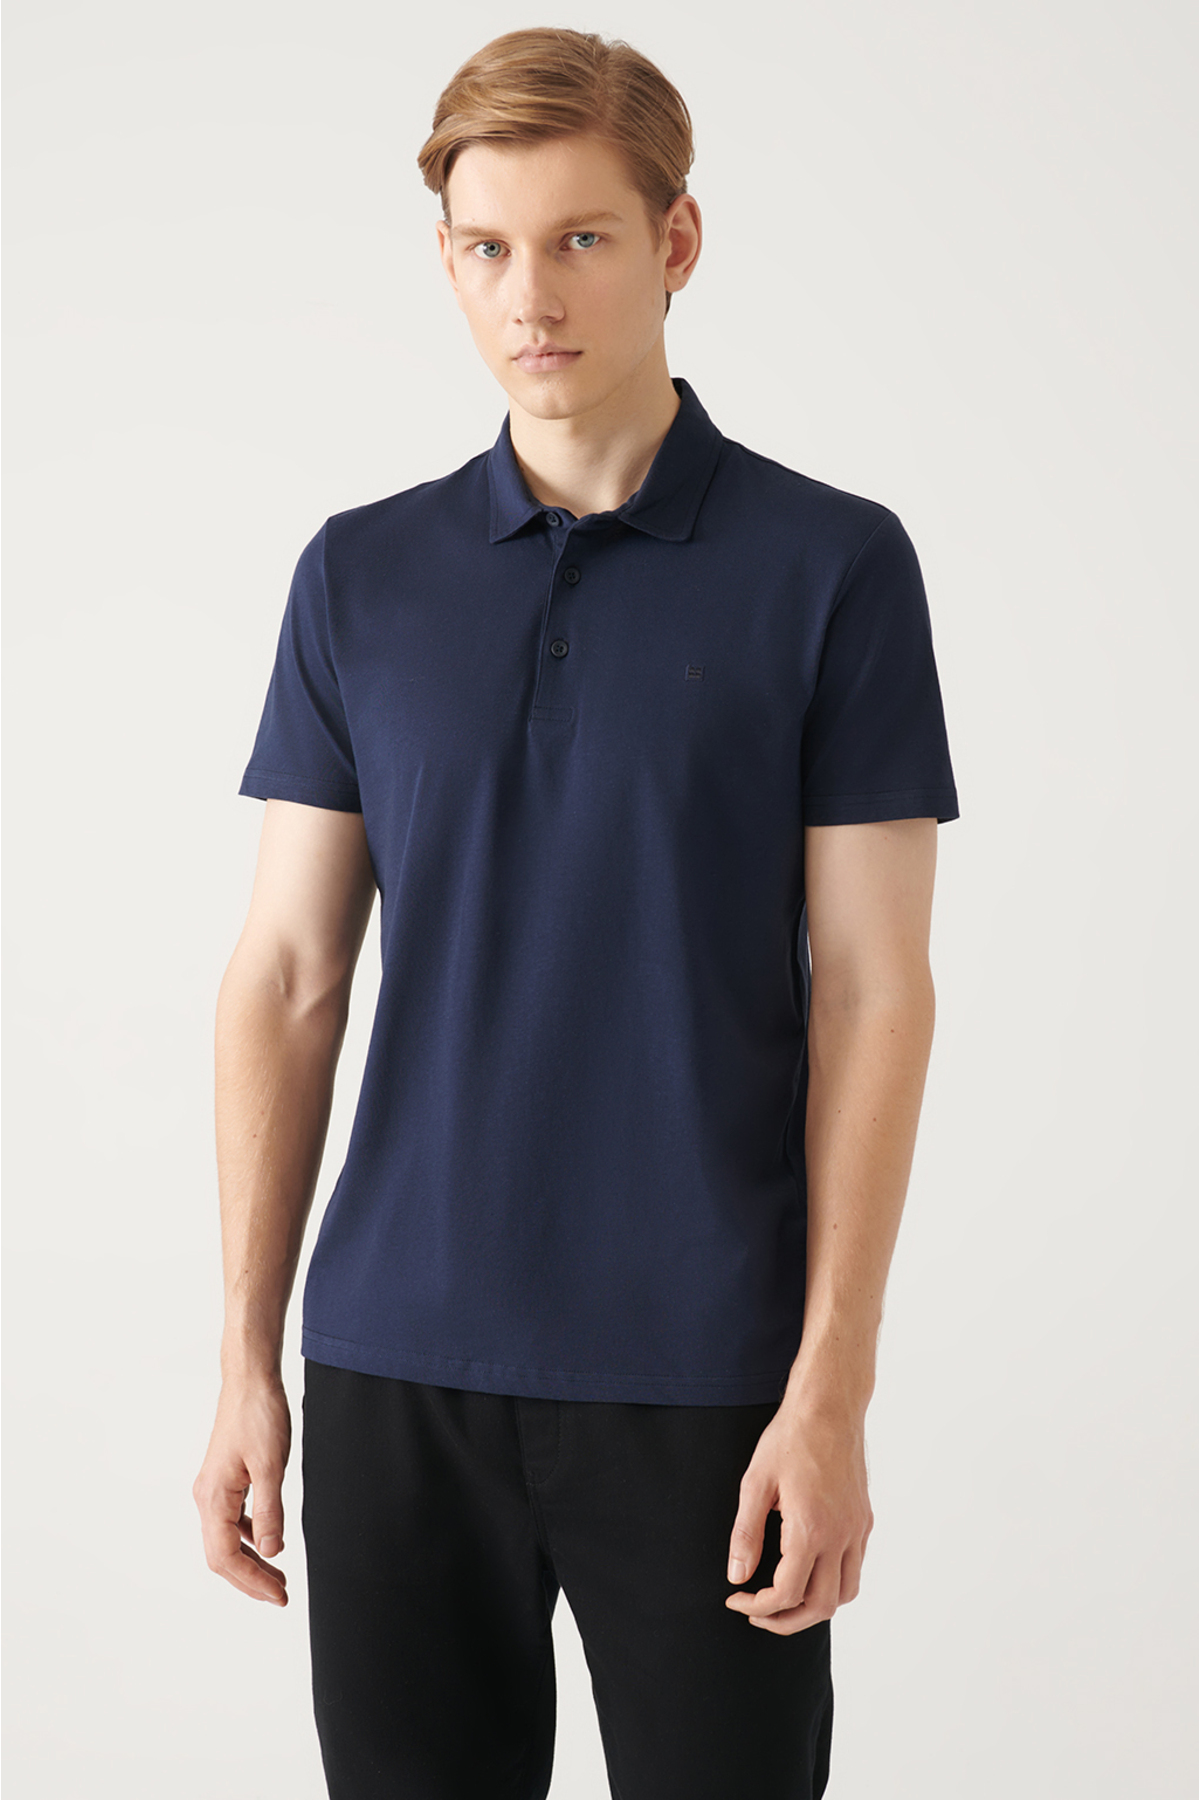 Avva Men's Navy Blue 100% Cotton Standard Fit Normal Cut 3 Buttons Anti-roll Polo T-shirt